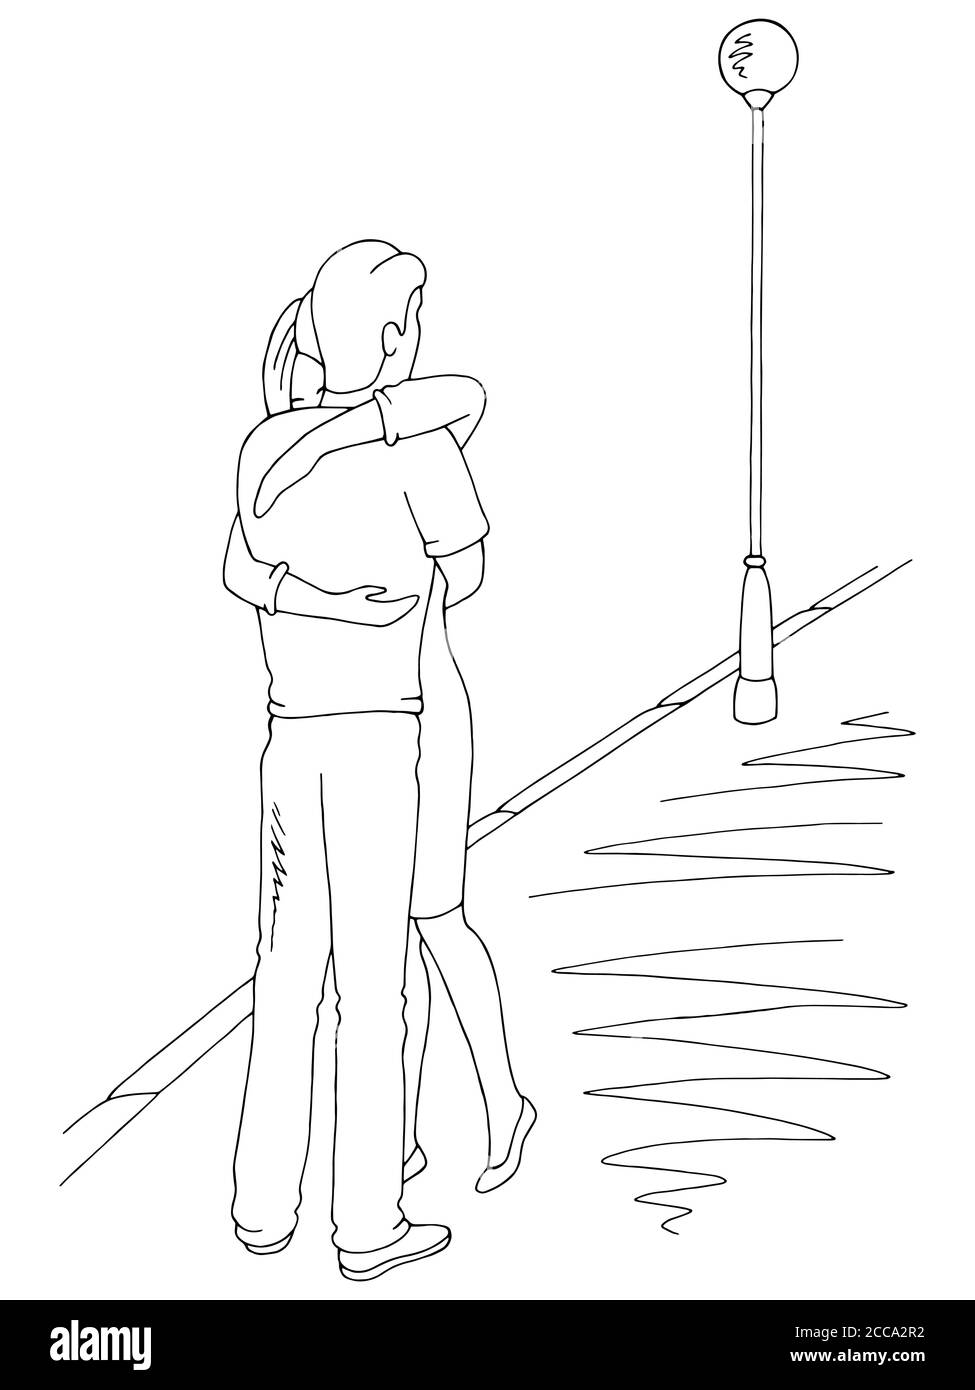 Mann und Frau umarmen Treffen auf der Straße Grafik schwarz Vektor für Skizzendarstellung im weißen Querformat Stock Vektor